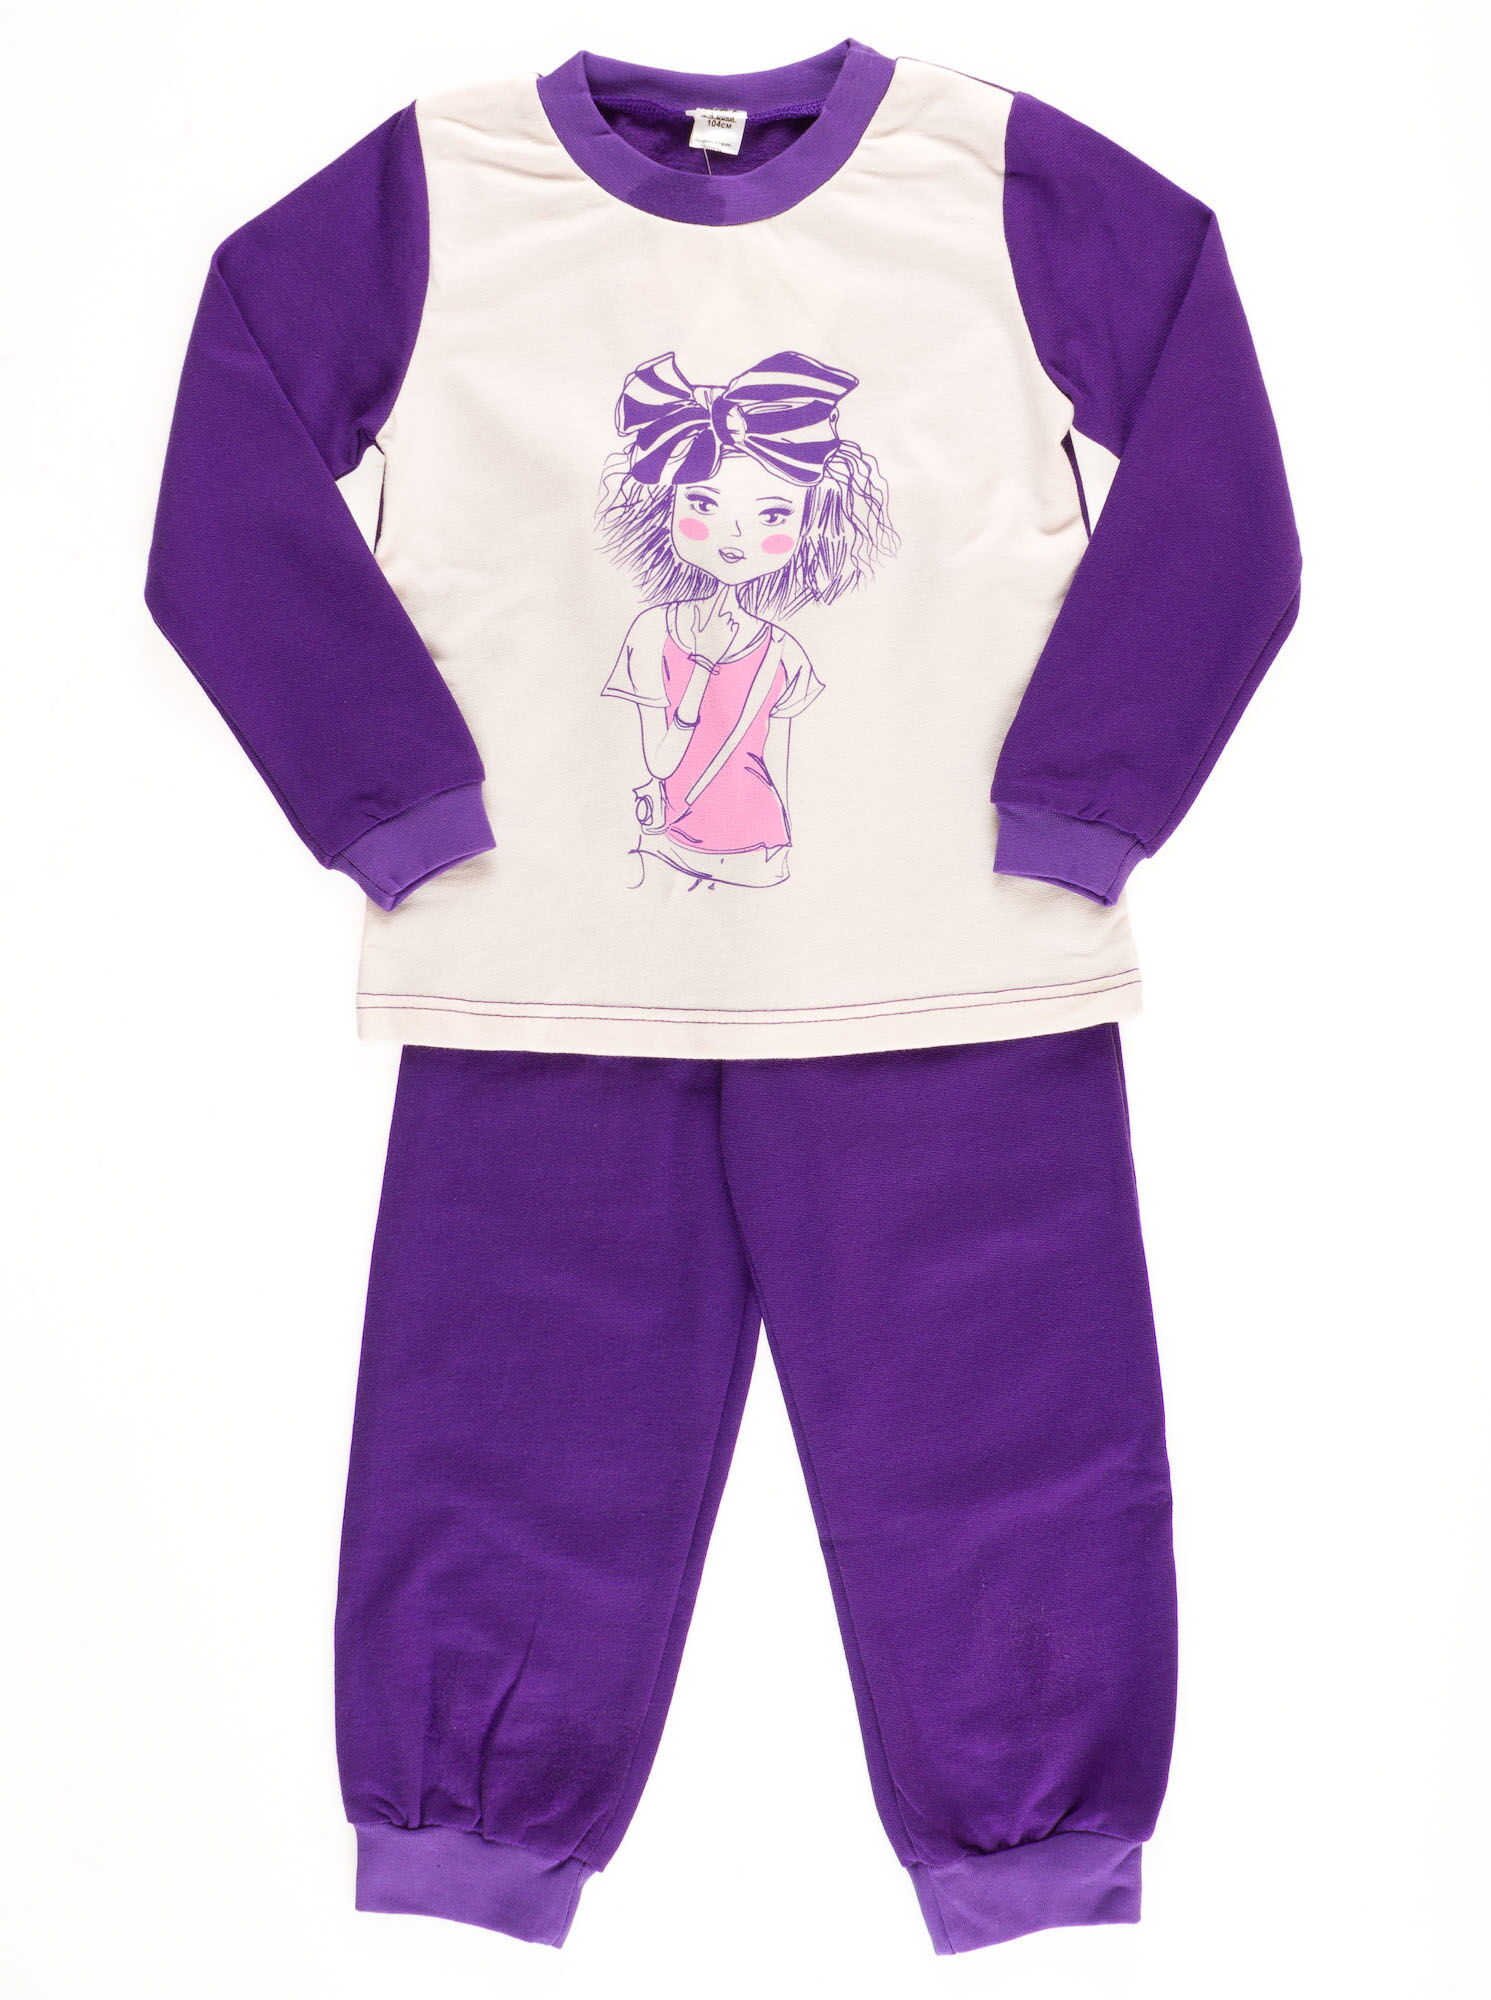 Пижама утепленная для девочки Valeri tex фиолетовая 1623-55-155 - цена